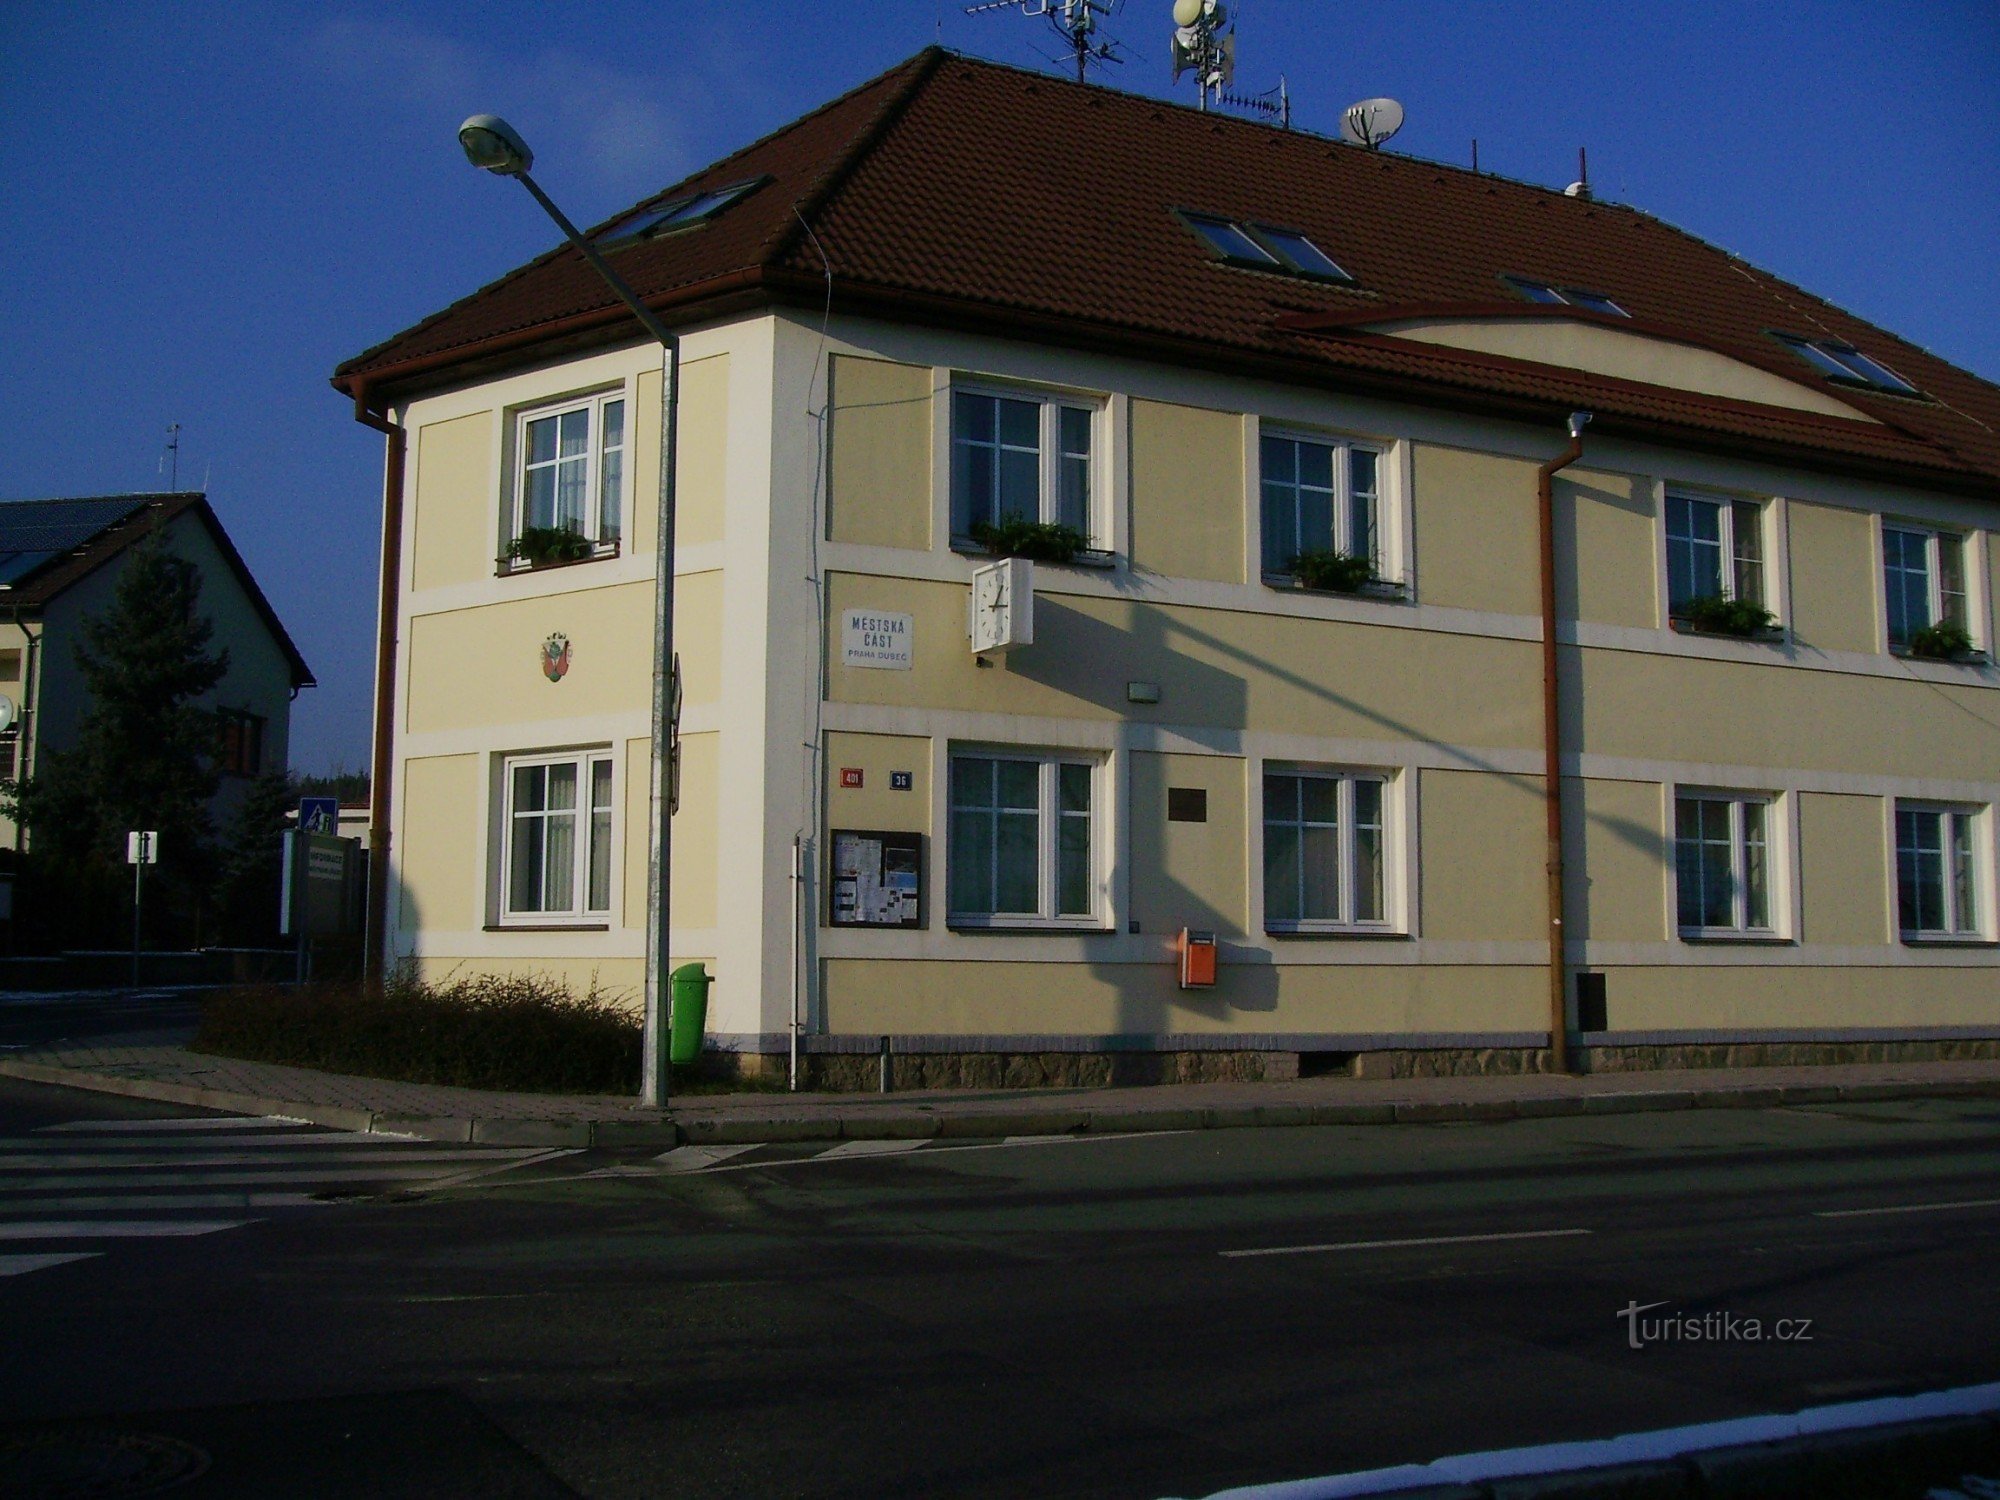 Biroul Districtului Municipal din Praga - Dubeč